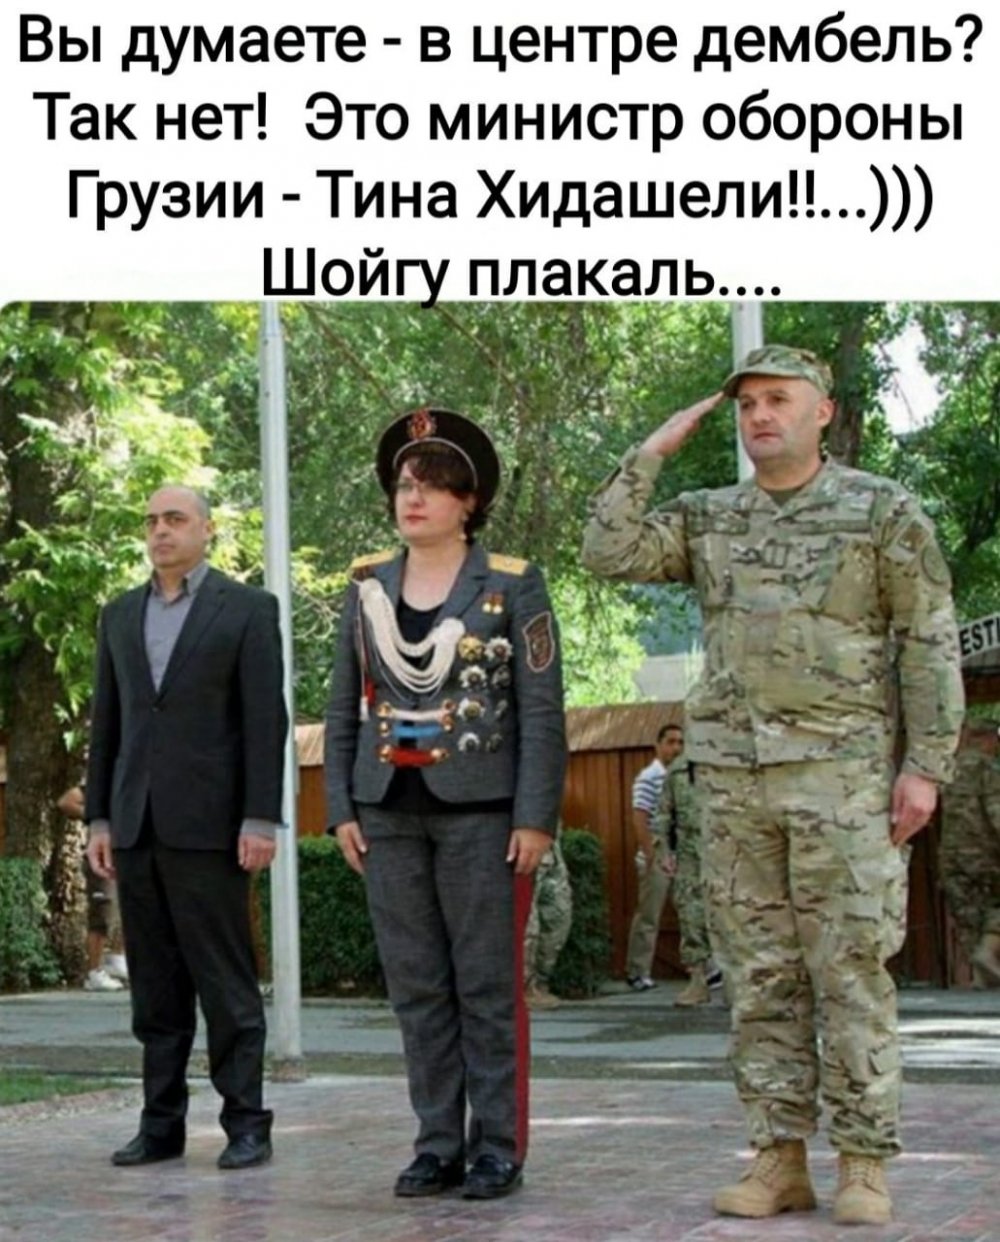 Министр обороны Грузии Тина Хидашели в военной форме